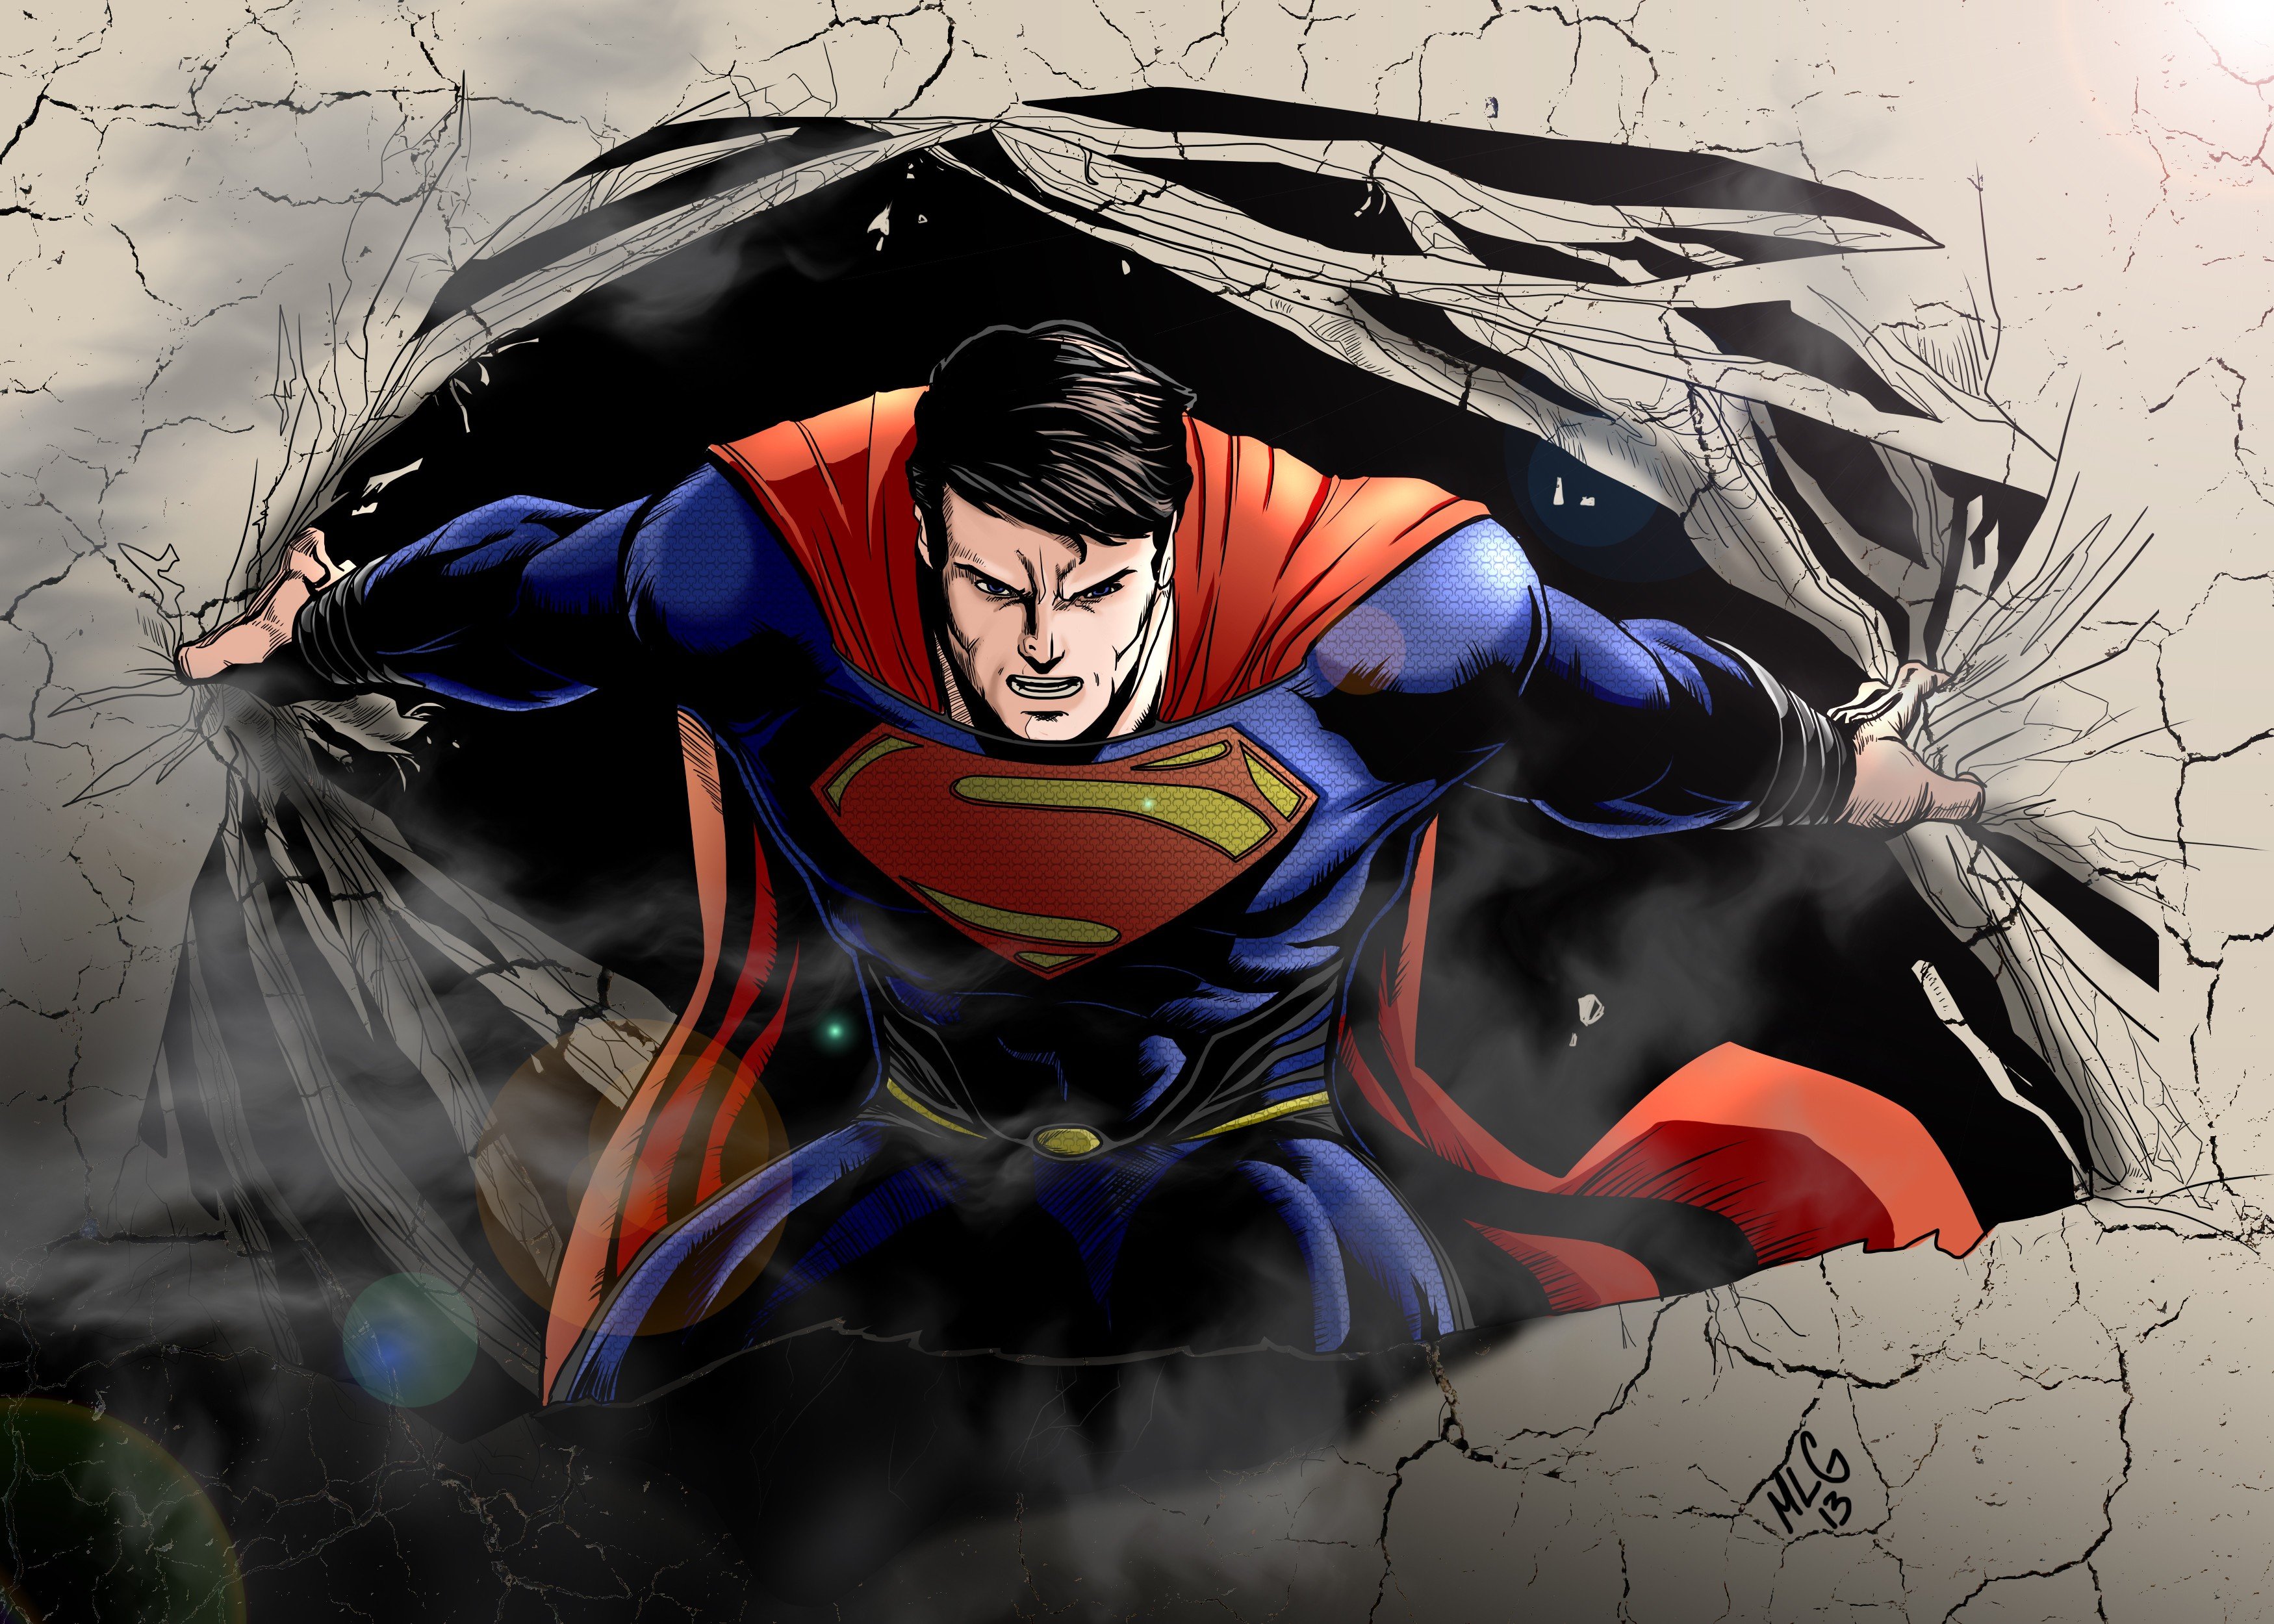 Superman speed up. Кларк Кент Супермен. Супермен DC. Супермен DC Comics Art. Супермен ДС комикс.